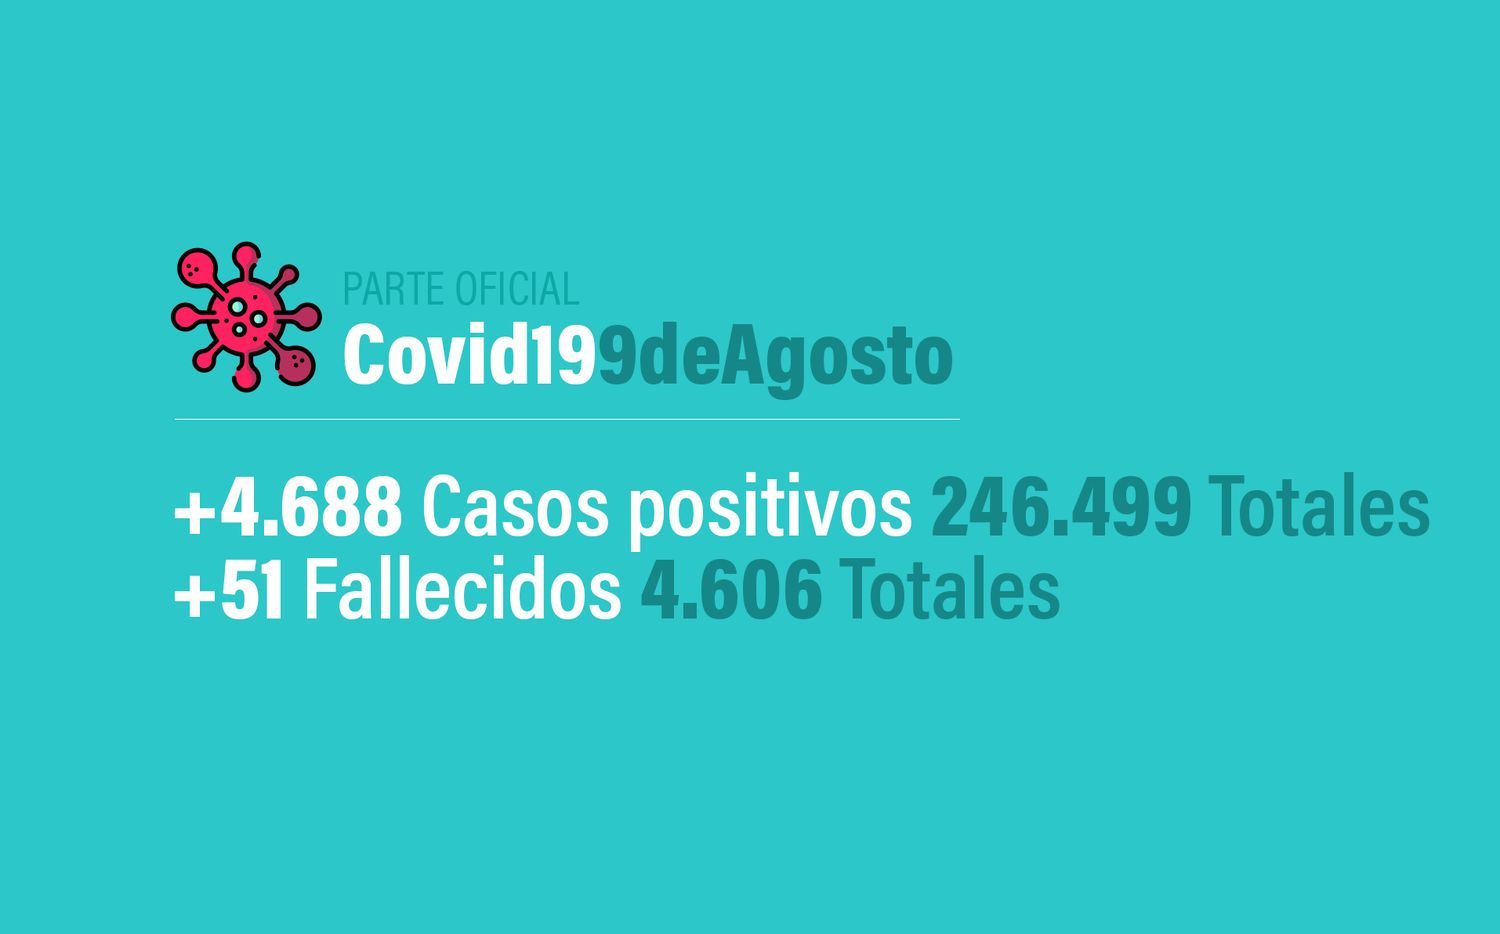 Coronavirus en Argentina: 4688 nuevos casos, 246499 confirmados y 4606 muertes, al 9 de agosto